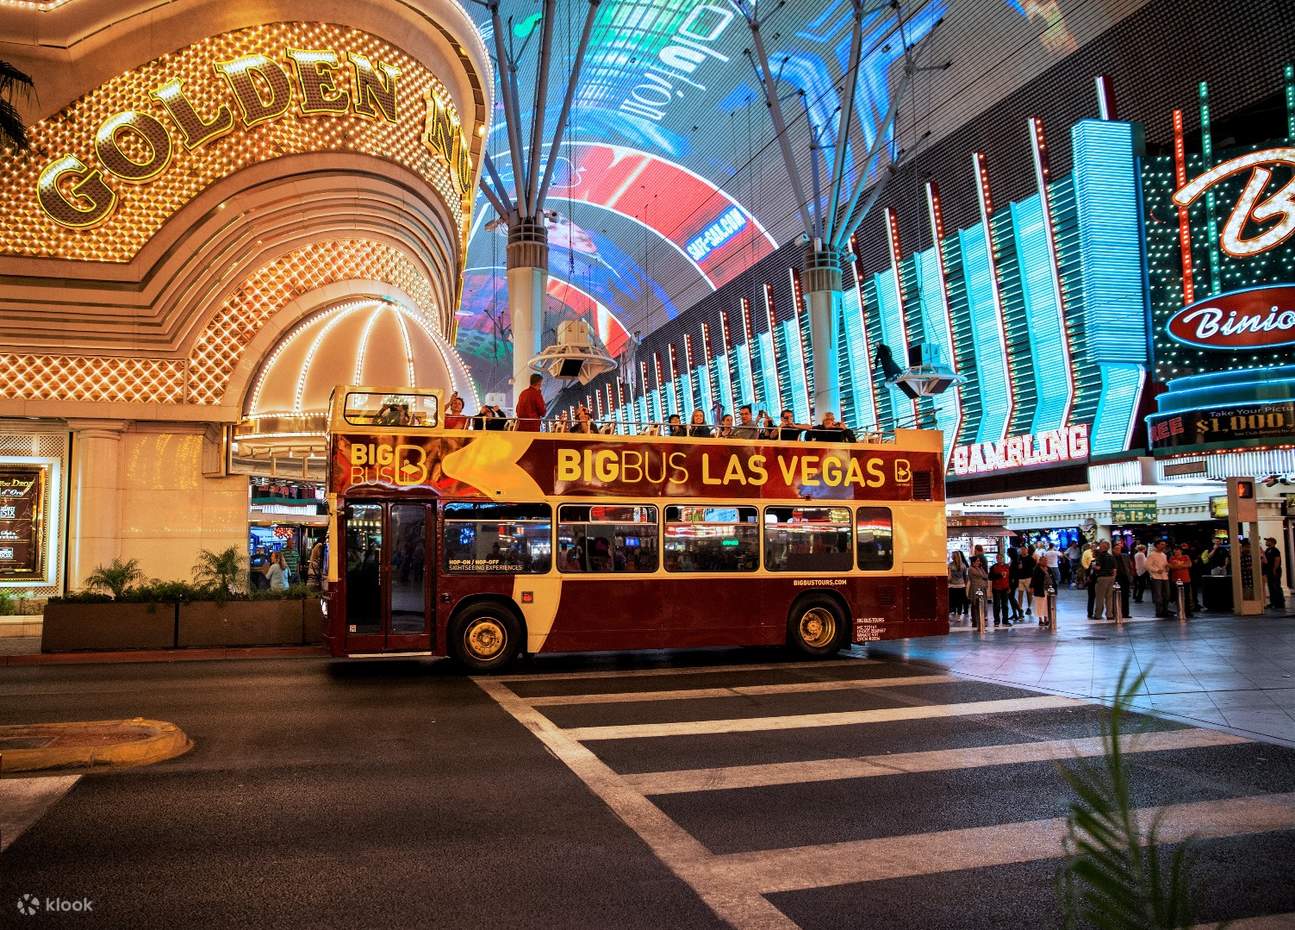 Las Vegas: excursão turística hop-on hop-off do Big Bus